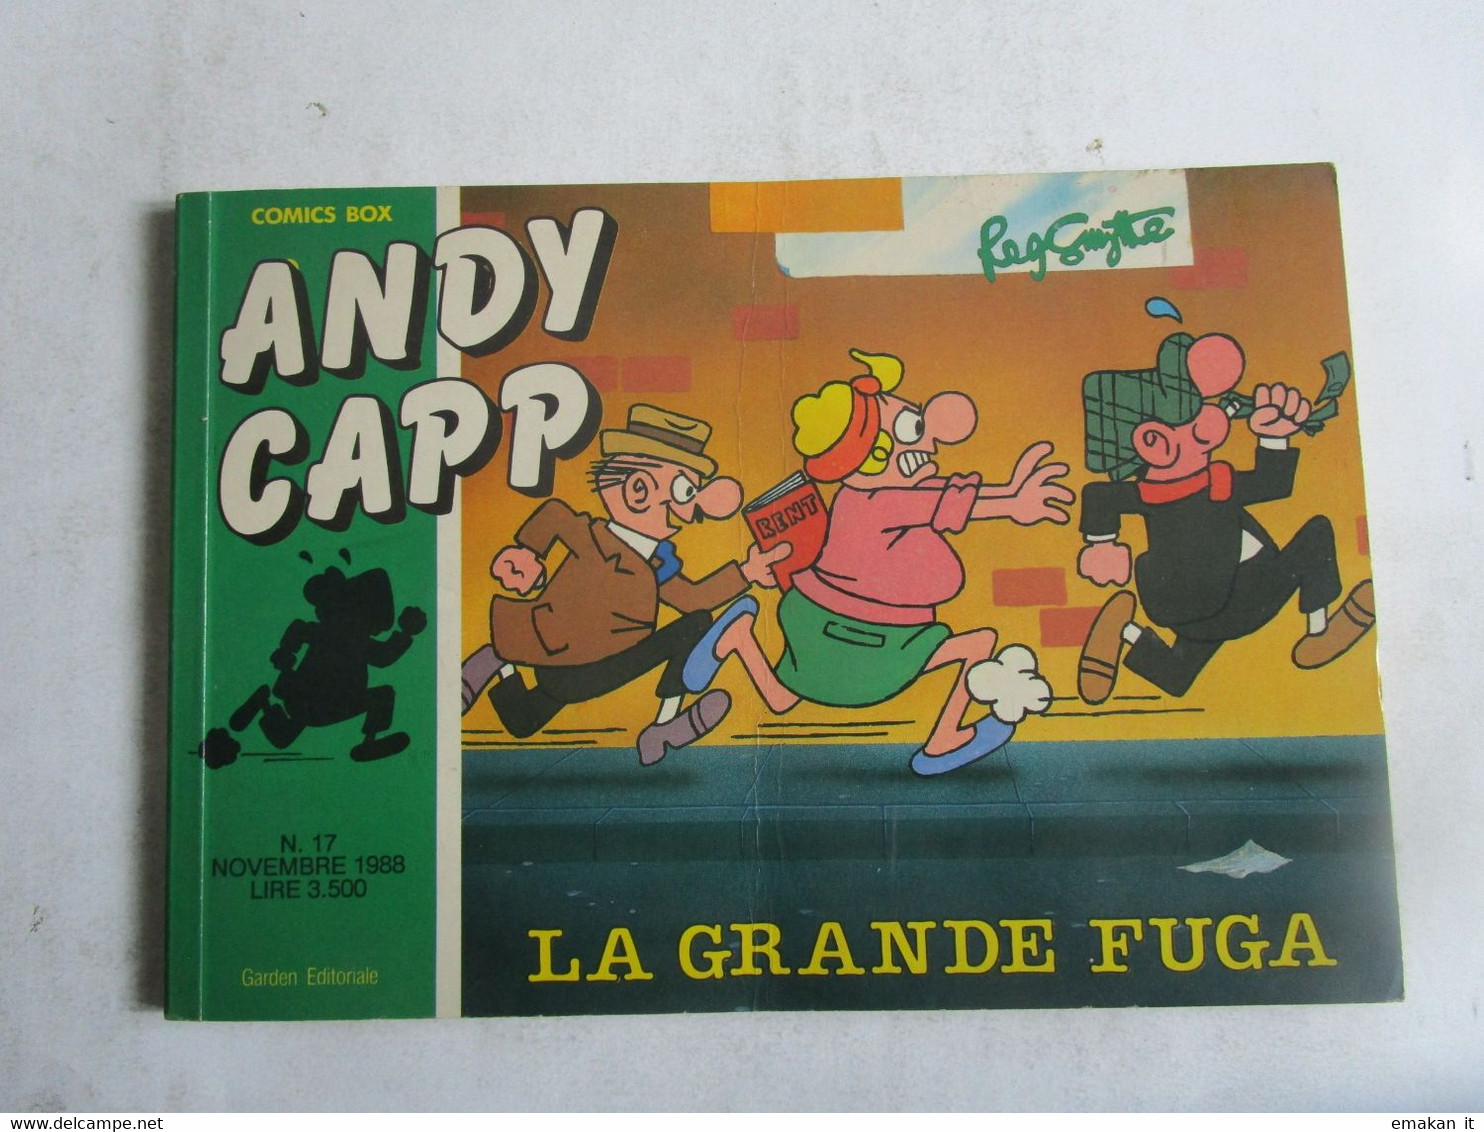 # ANDY CAPP GARDEN EDITORE N 17 / 1988 LA GRANDE FUGA - First Editions